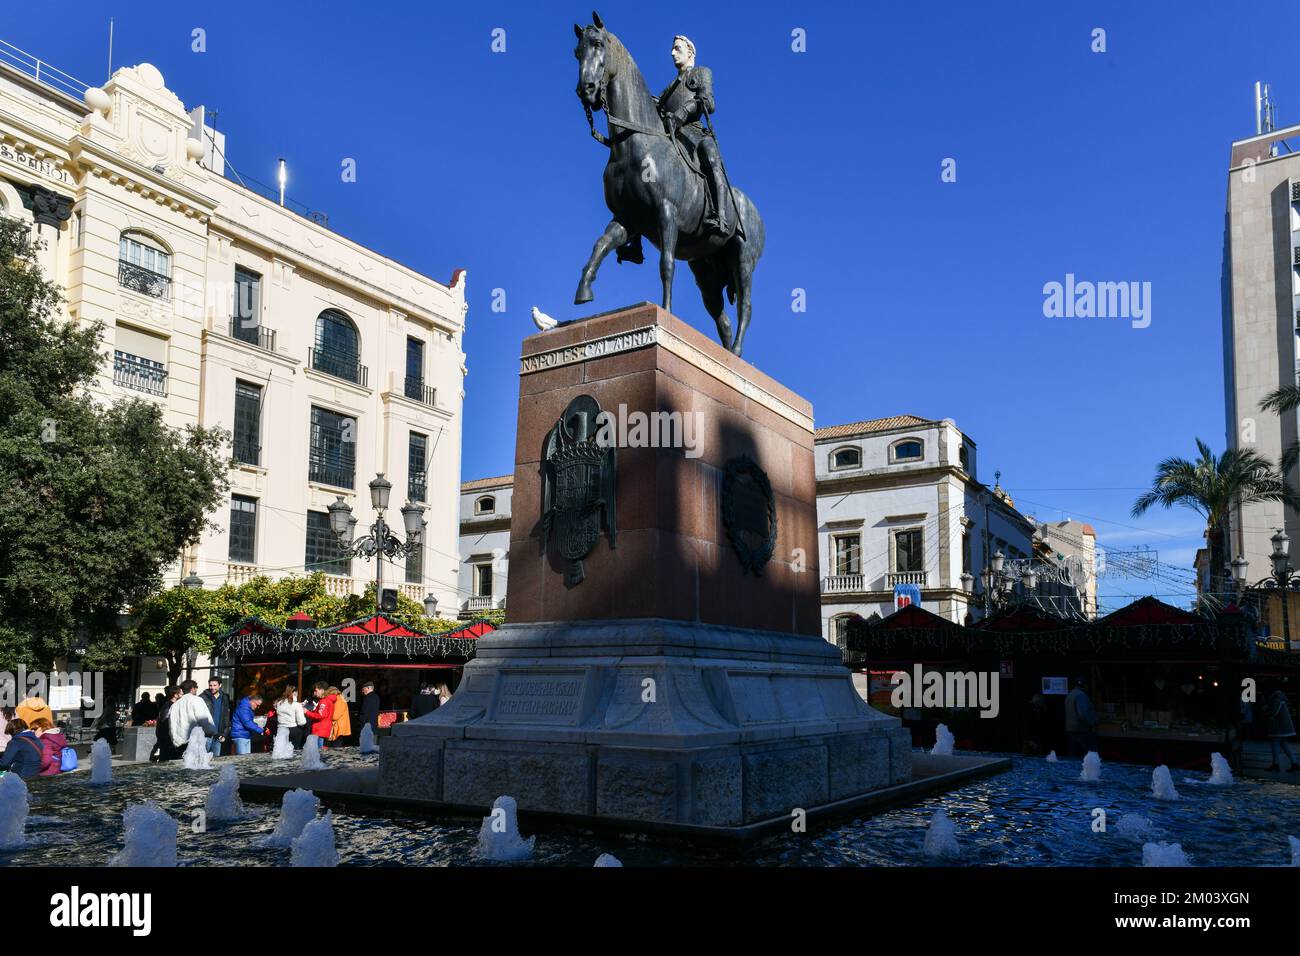 Cordoue, Espagne - 28 novembre 2021 : place Tendillas au coeur de Cordoue. Statue de Gonzalo Fernandez de Cordoba (1453-1515), connue sous le nom de « Grand capitaine ». COR Banque D'Images